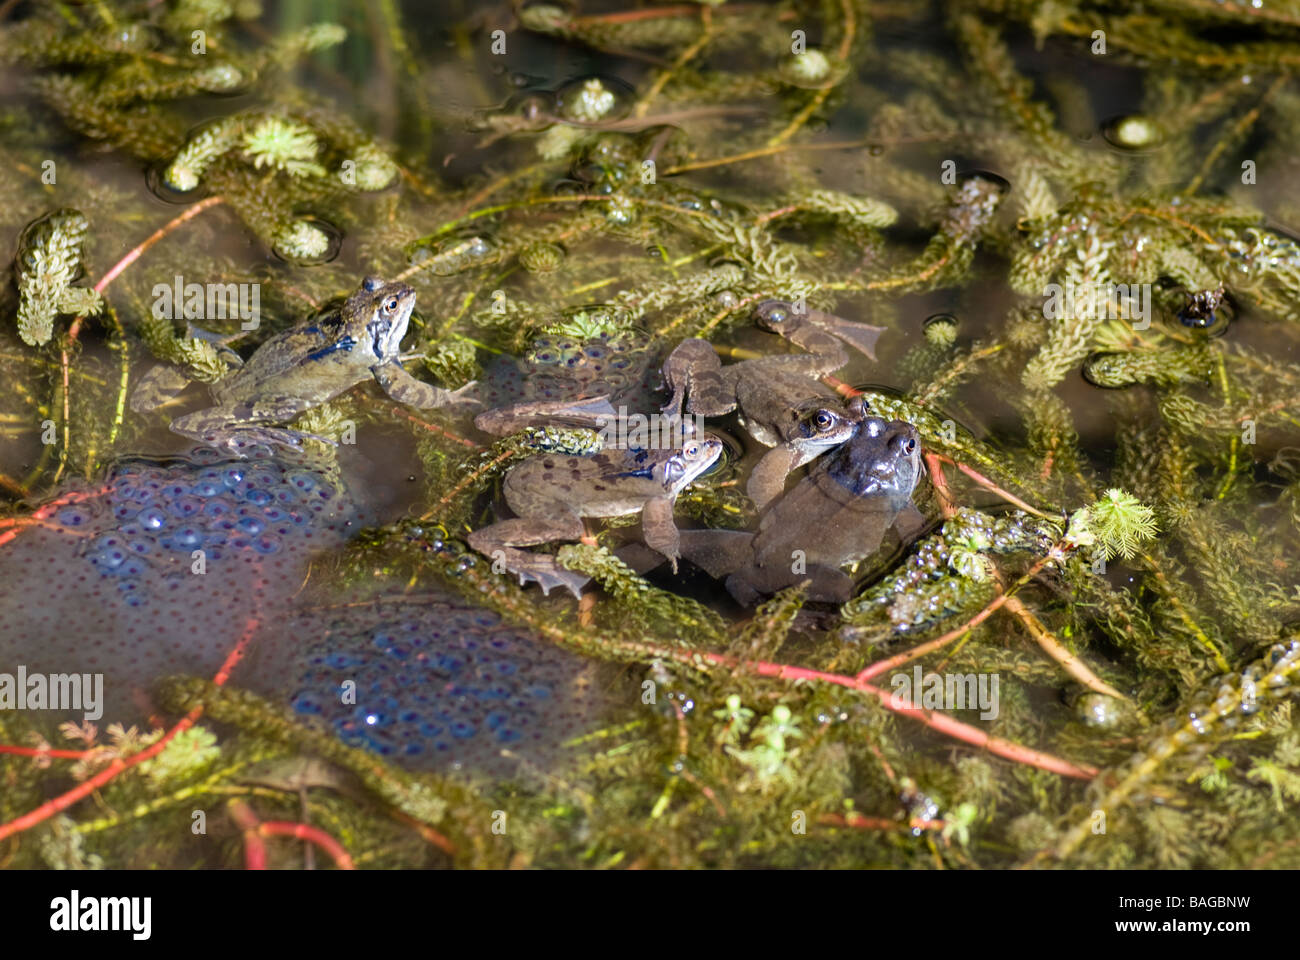 Laichenden Frösche und Frosch spawnen in einem Gartenteich Stockfotografie  - Alamy